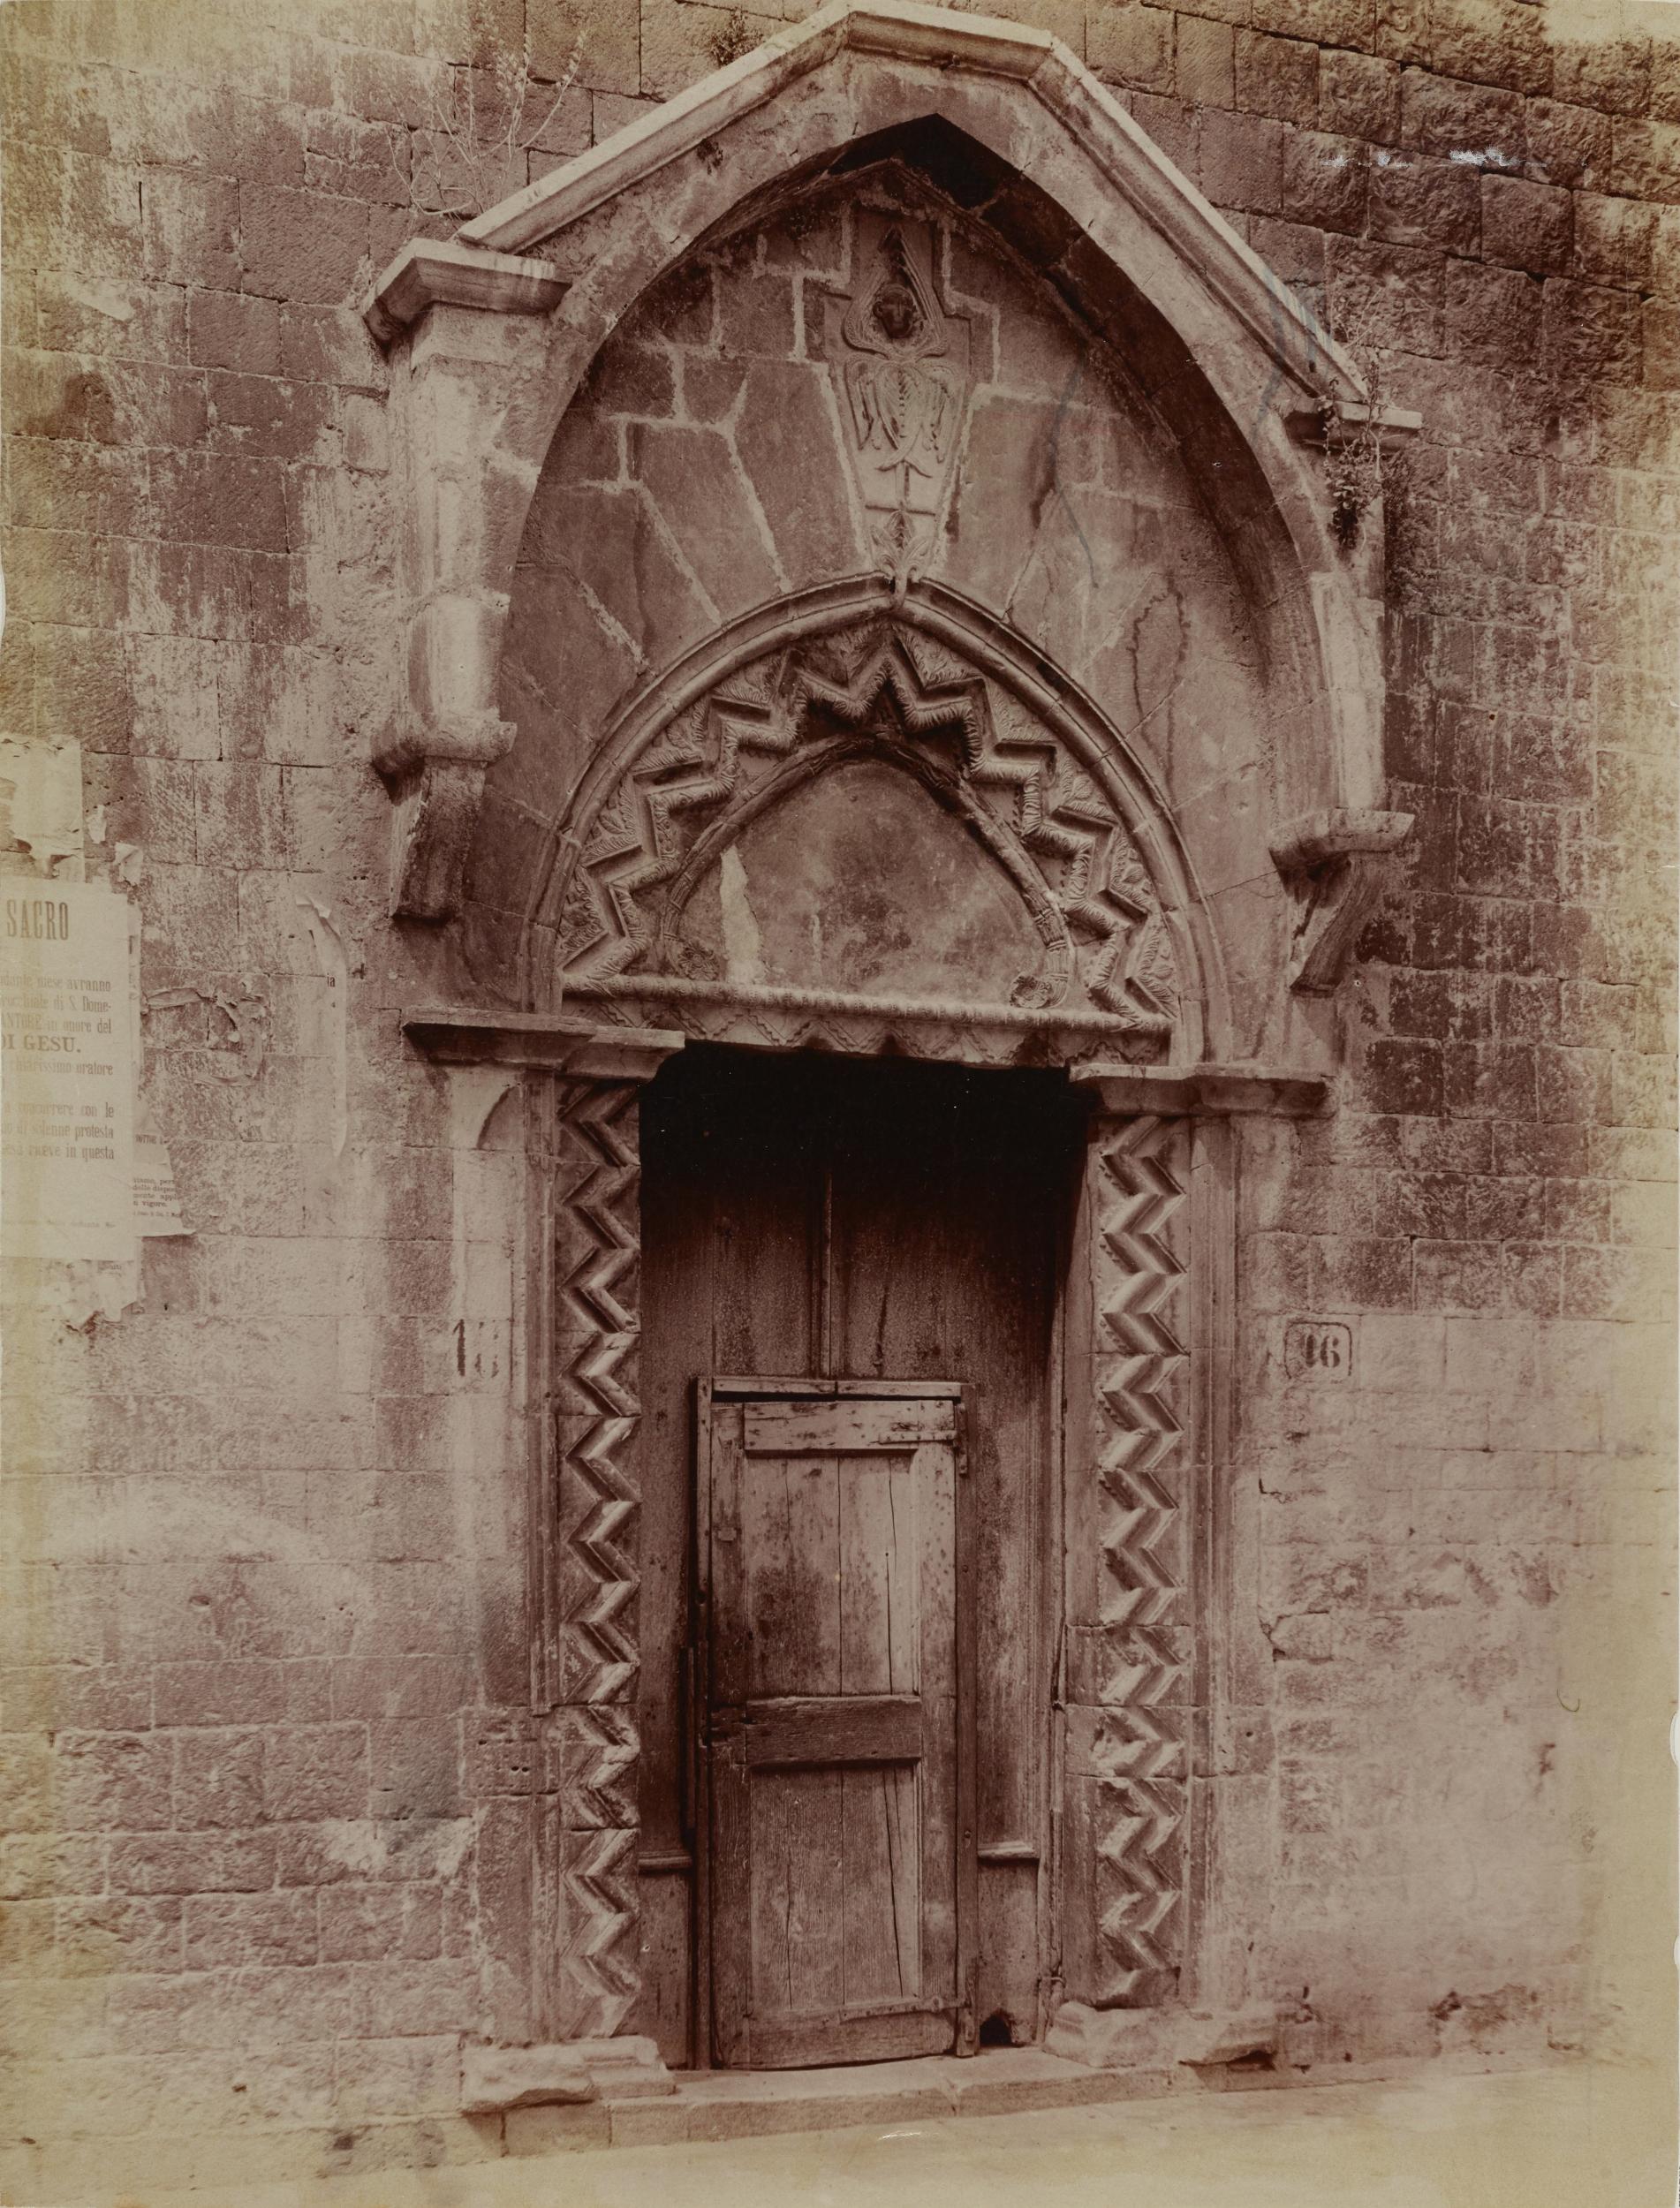 Fotografo non identificato, Andria - Basilica di S. Francesco, portale laterale destro, 1904-1915, albumina/carta, MPI131875